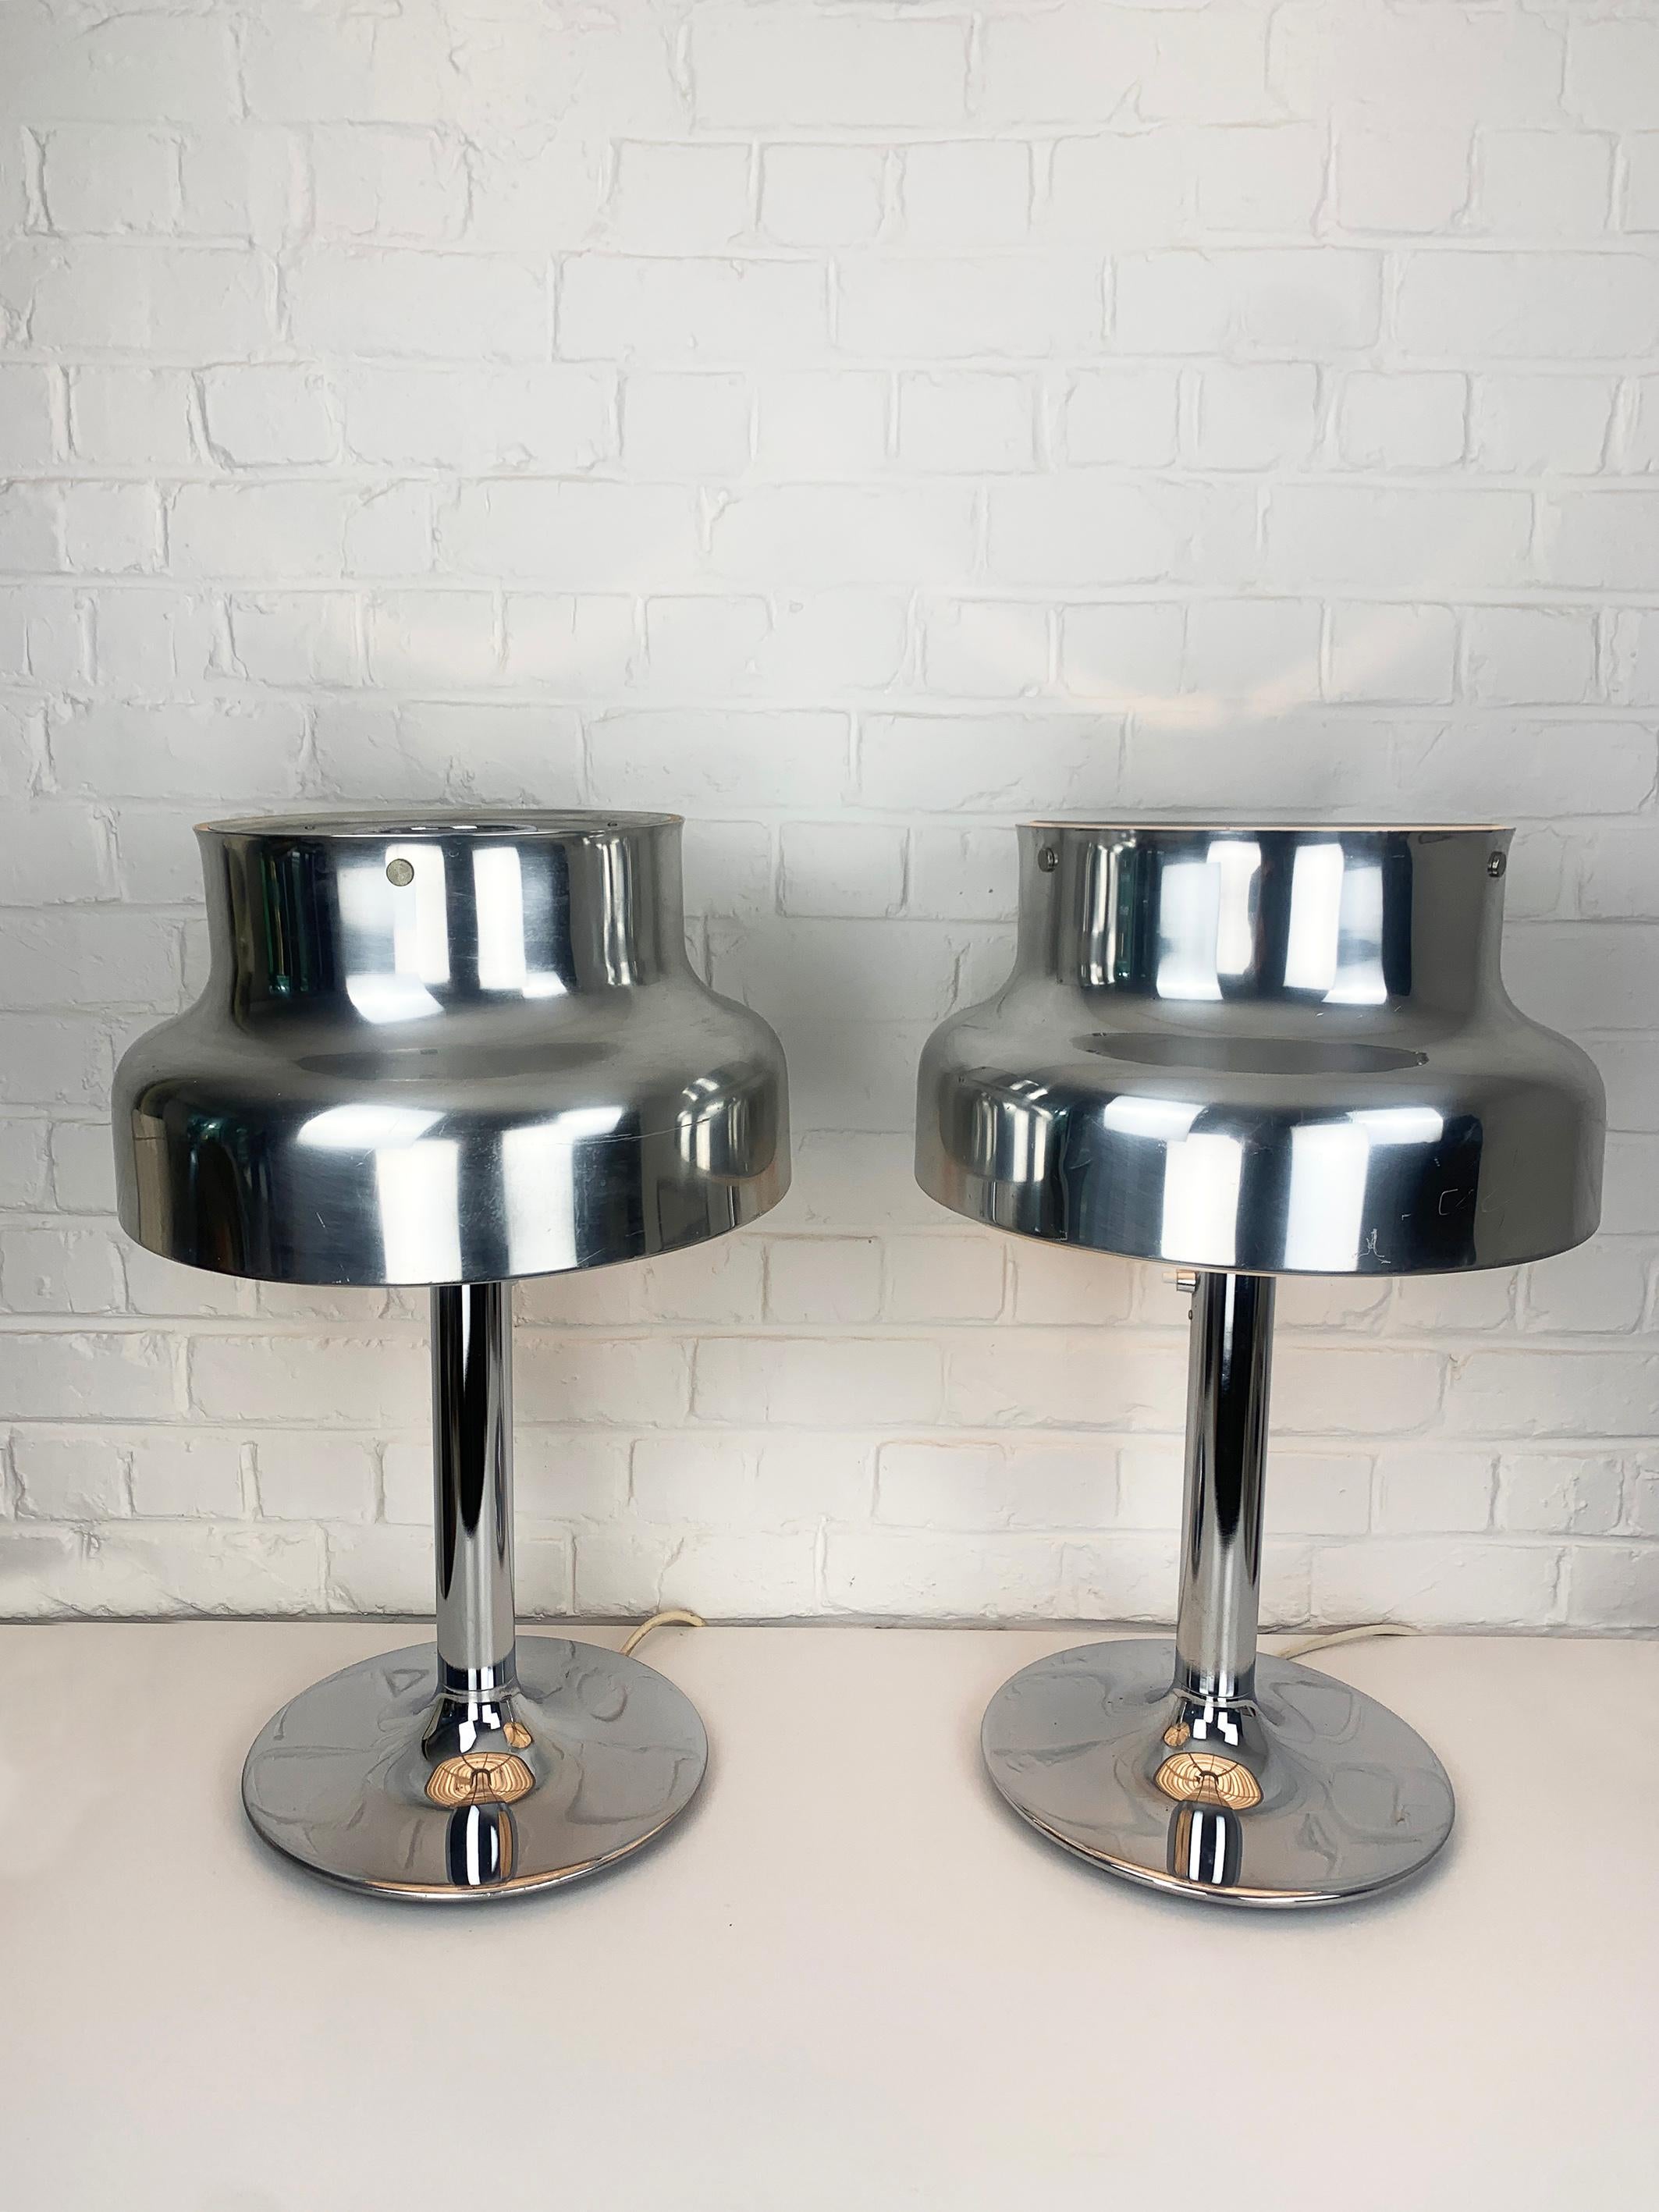 Seltenes Paar der eindrucksvollen Bumling-Tischlampen in Aluminium/Chrom-Finish. Beide Lampen sind mit einem Label versehen. 

Die Bumling-Leuchtenserie wurde Ende der 1960er Jahre von Anders Pehrson für Ateljé Lyktan in Åhus, Schweden, entworfen.